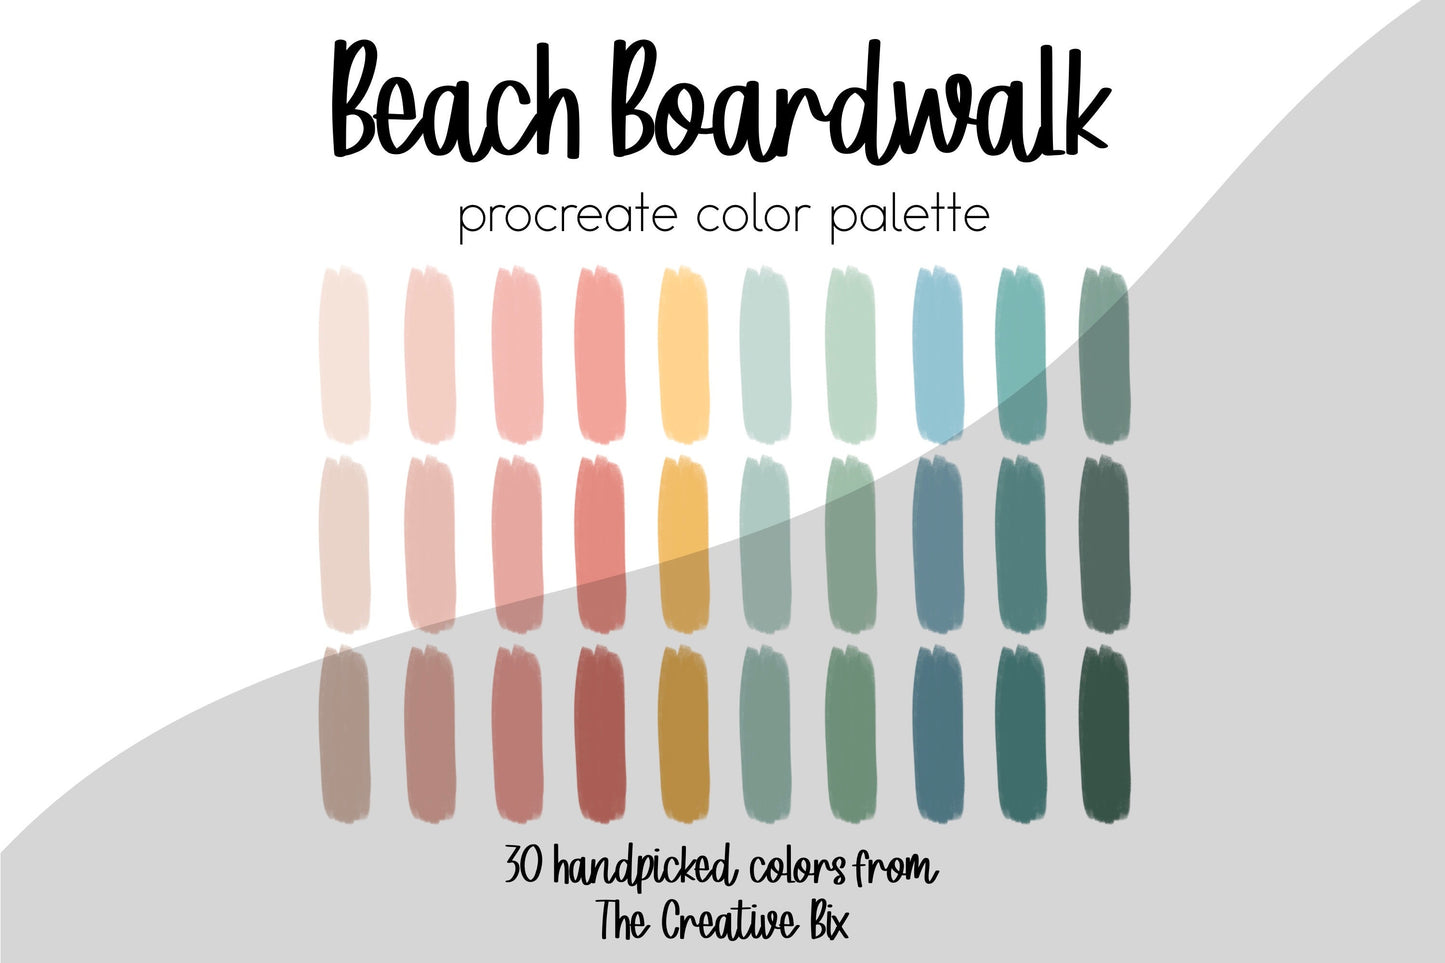 Beach Boardwalk Procreate Palette